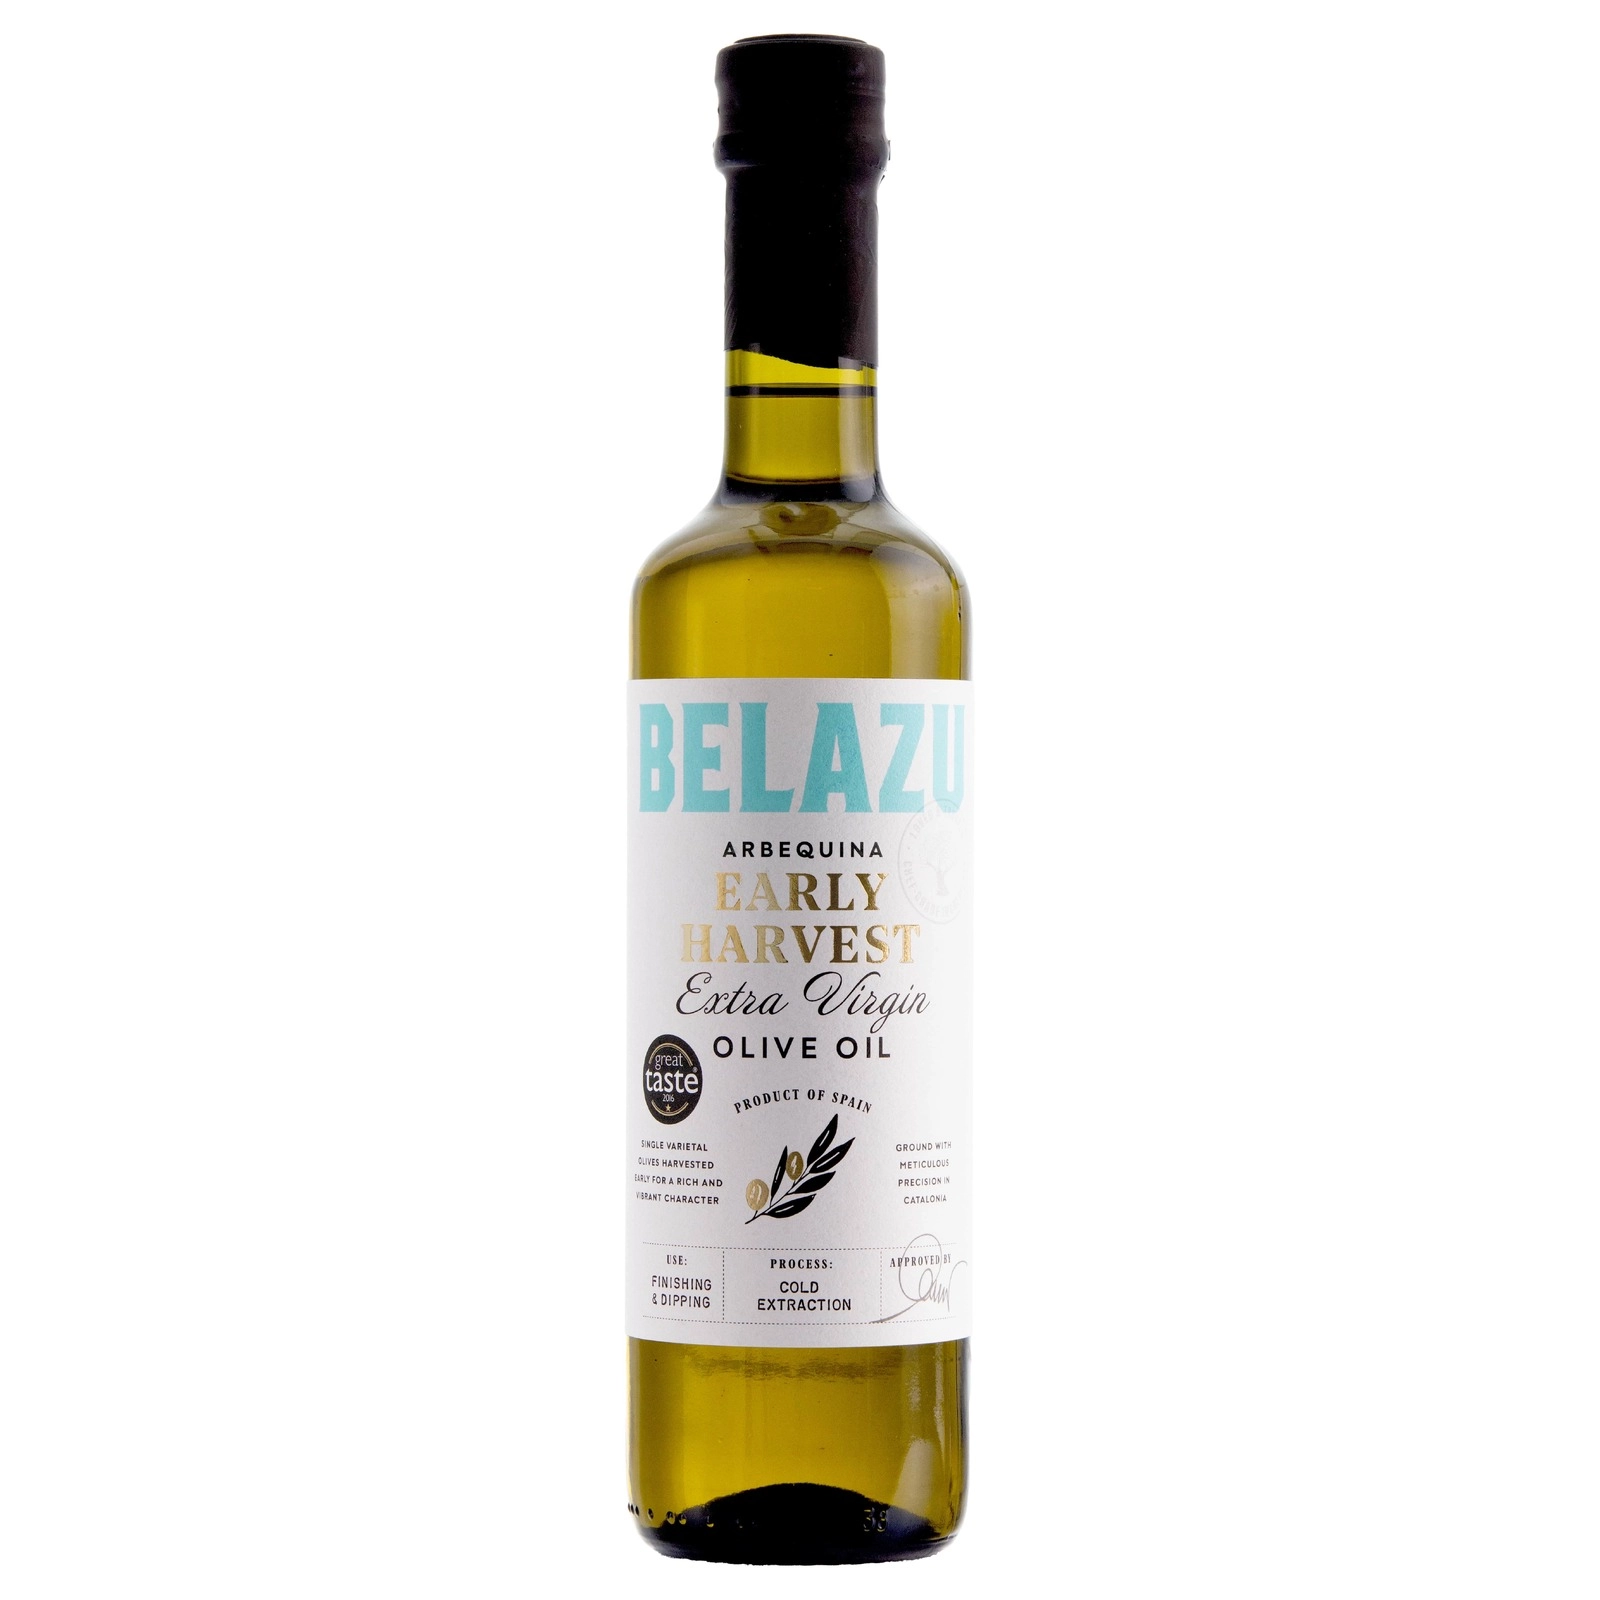 BELAZU Early Harvest Extra Virgin Olive Oil (500g)